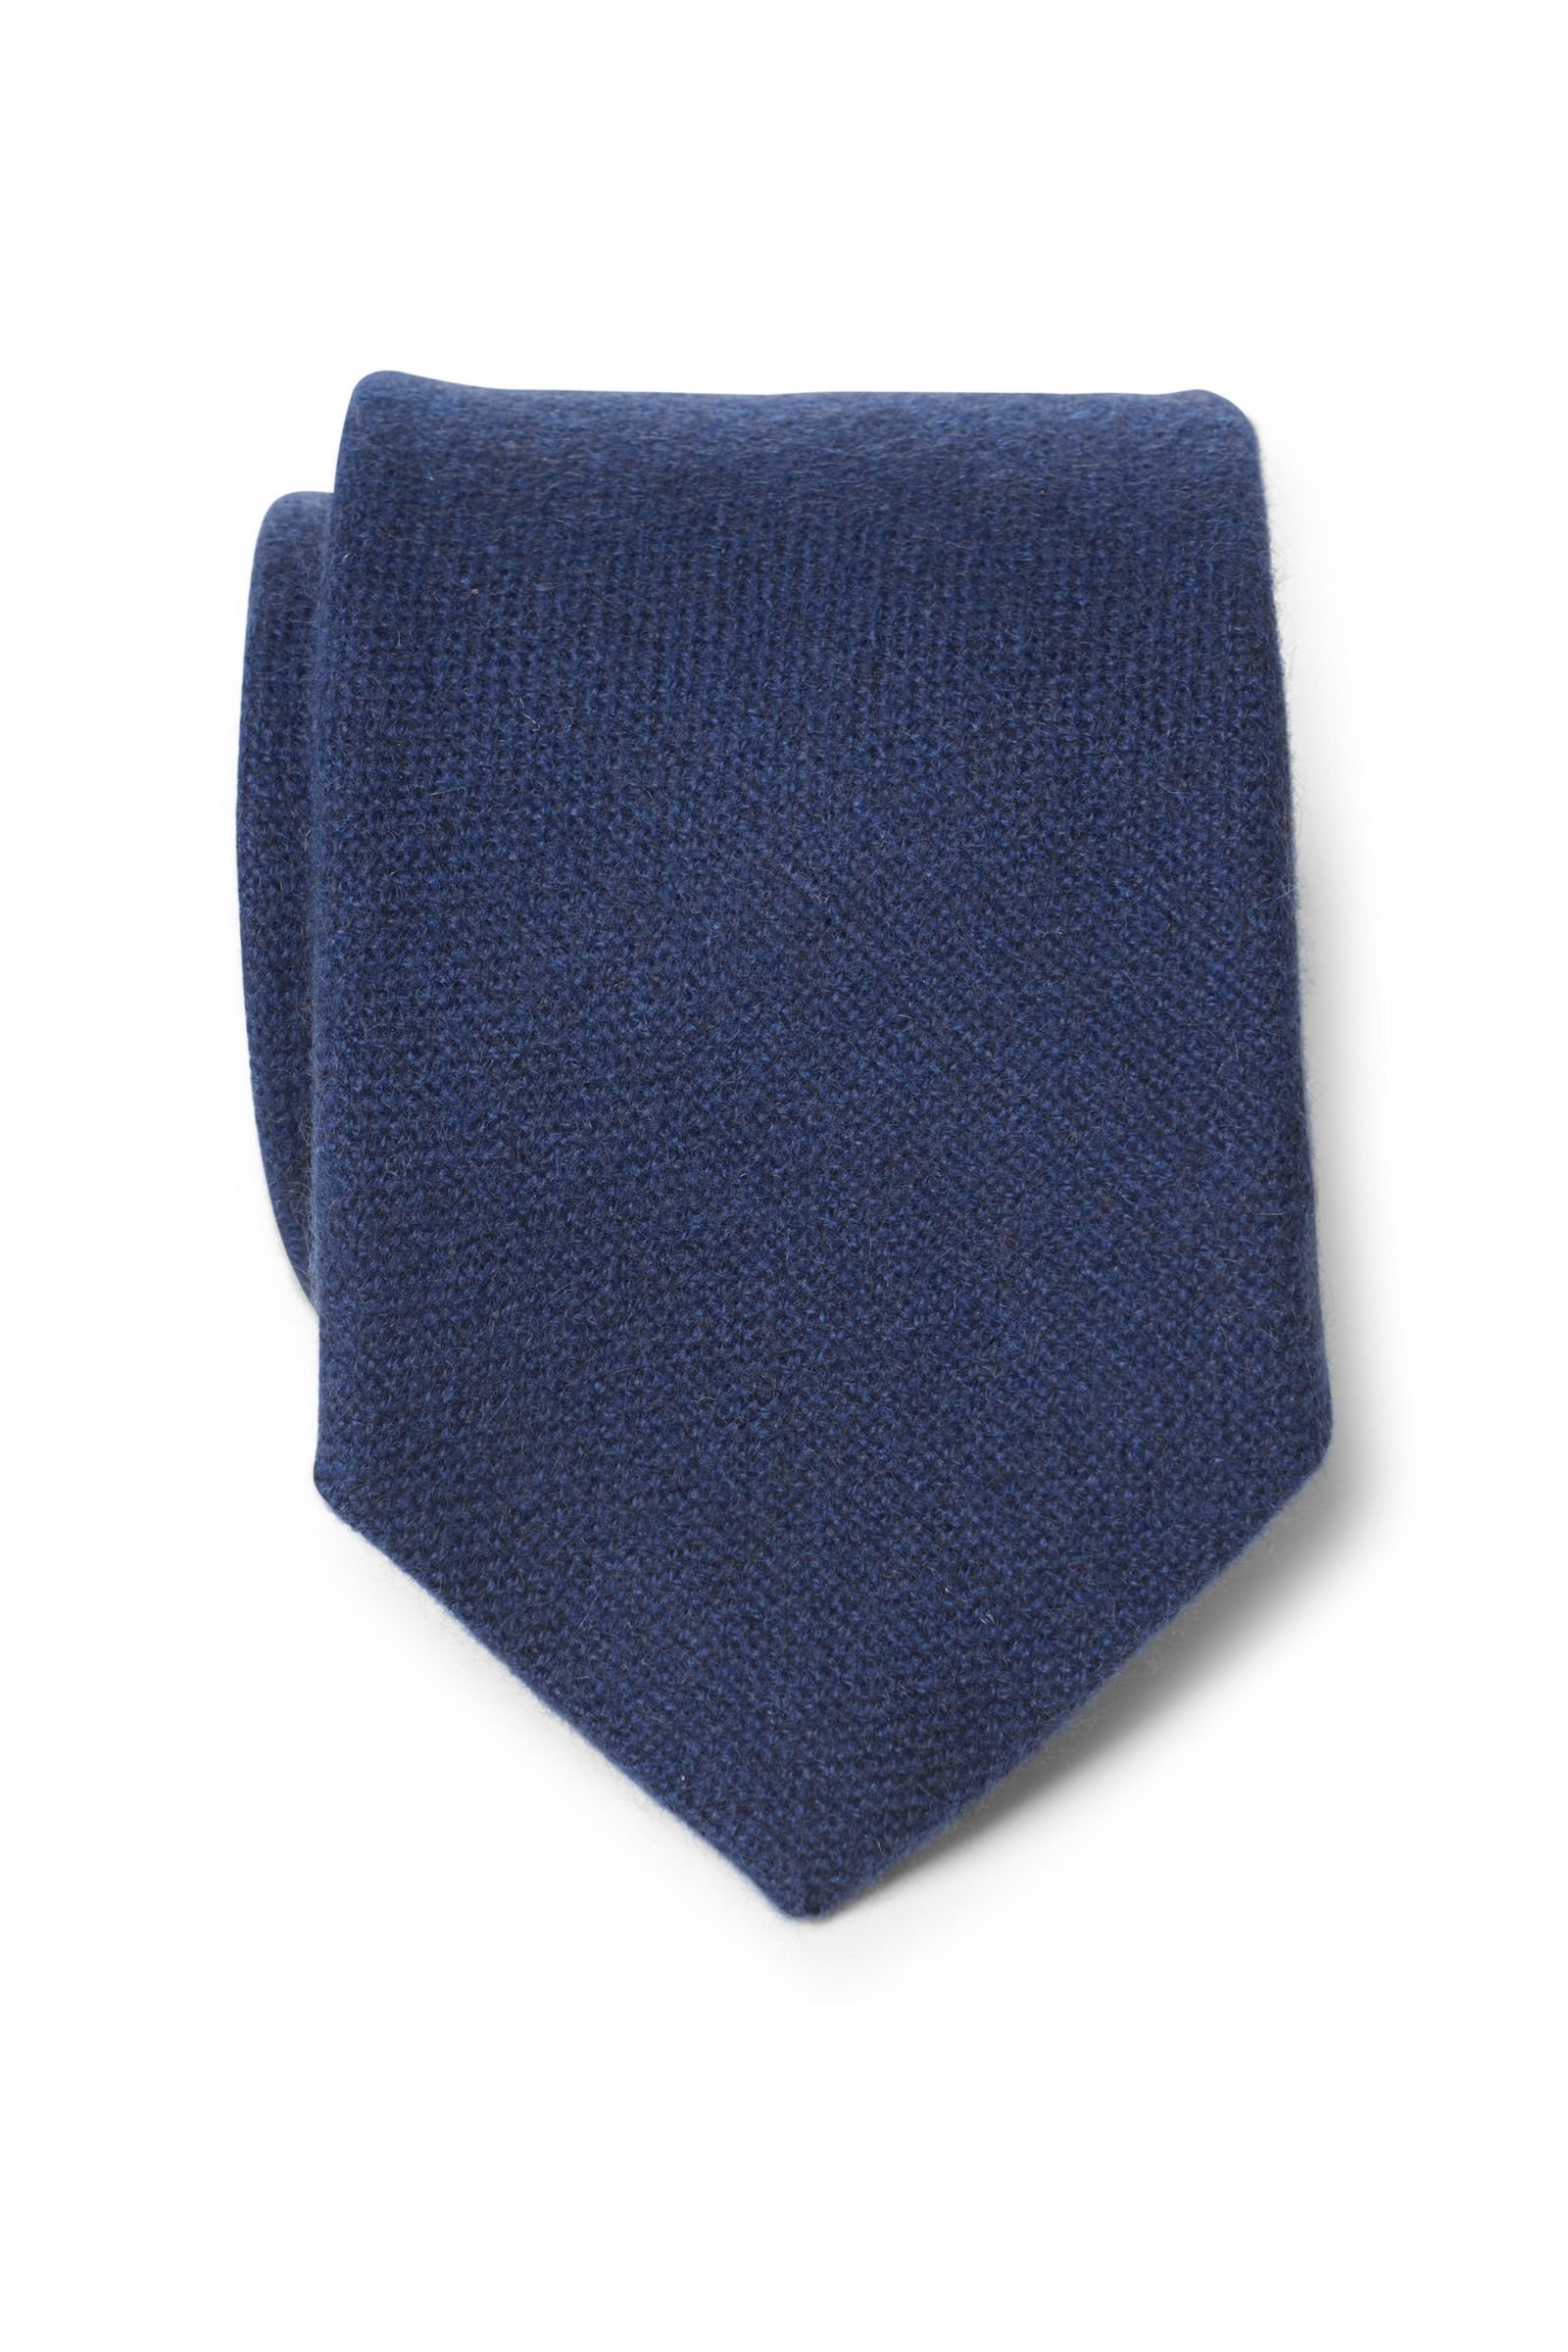 Cashmere tie dark blue